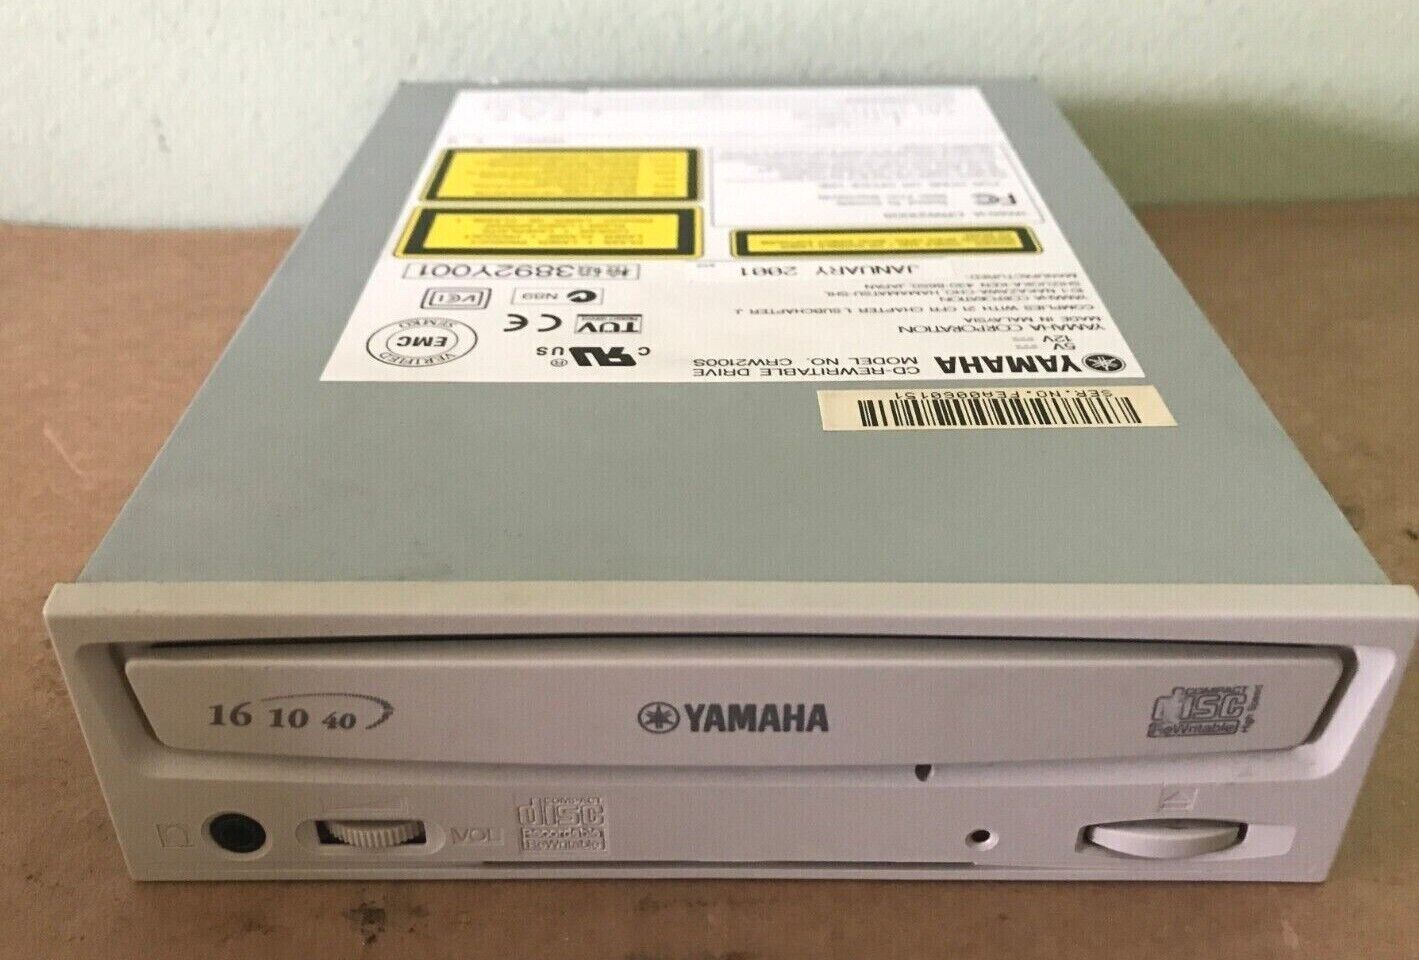 Yamaha CRW 2100S SCSI 50PIN Cdrw Cd-Rw Burner Cd-Writer 40/16/10